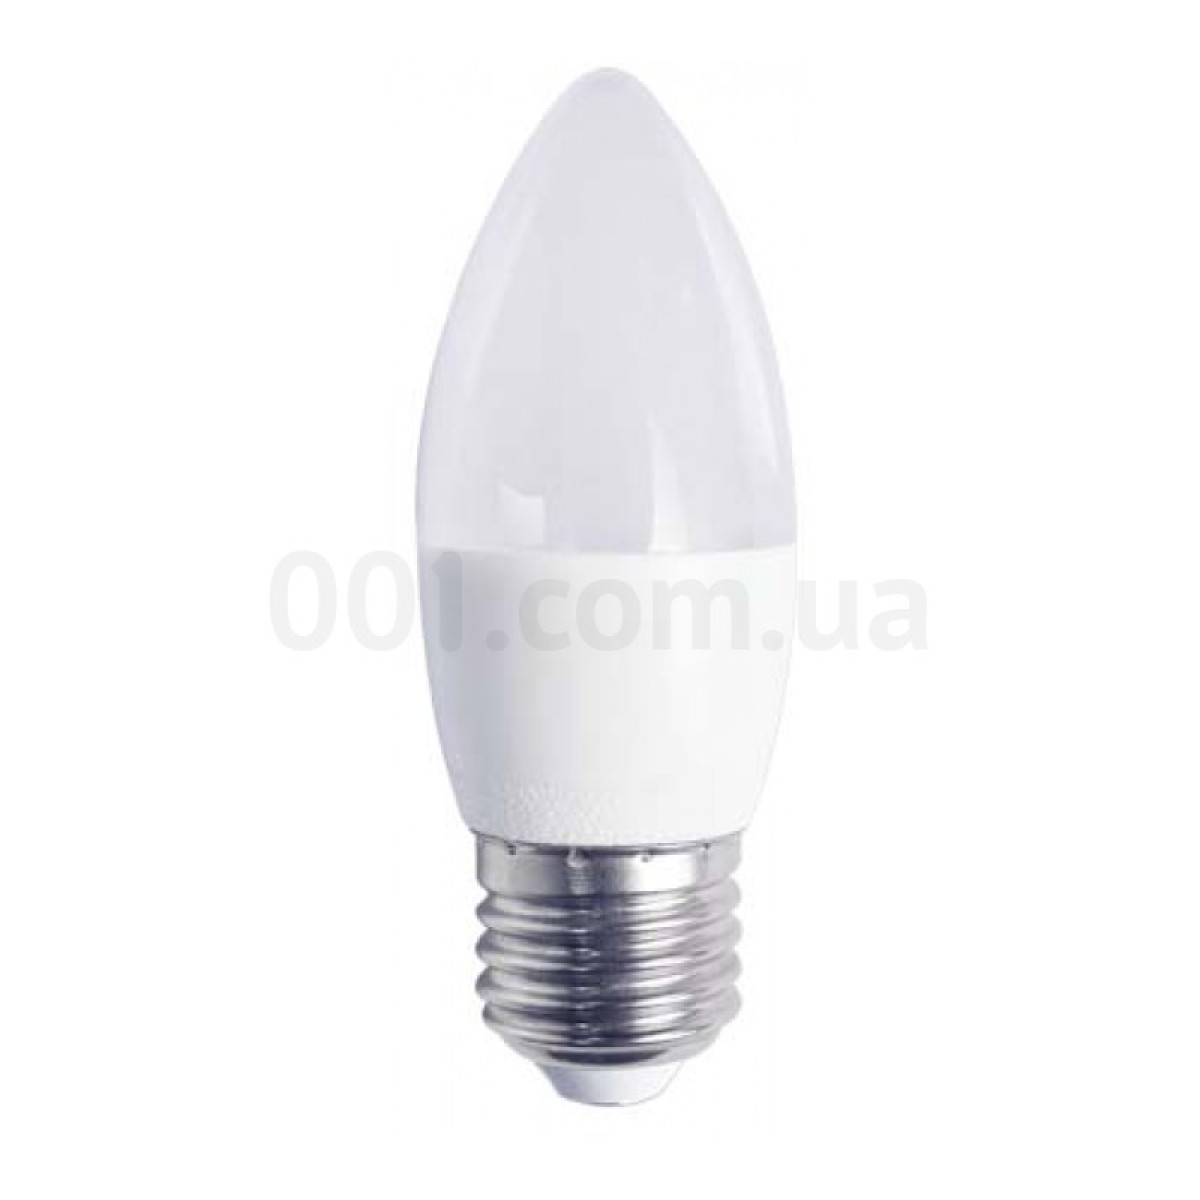 Светодиодная лампа LB-737 C37 (свеча) 6Вт 2700K E27, Feron 98_98.jpg